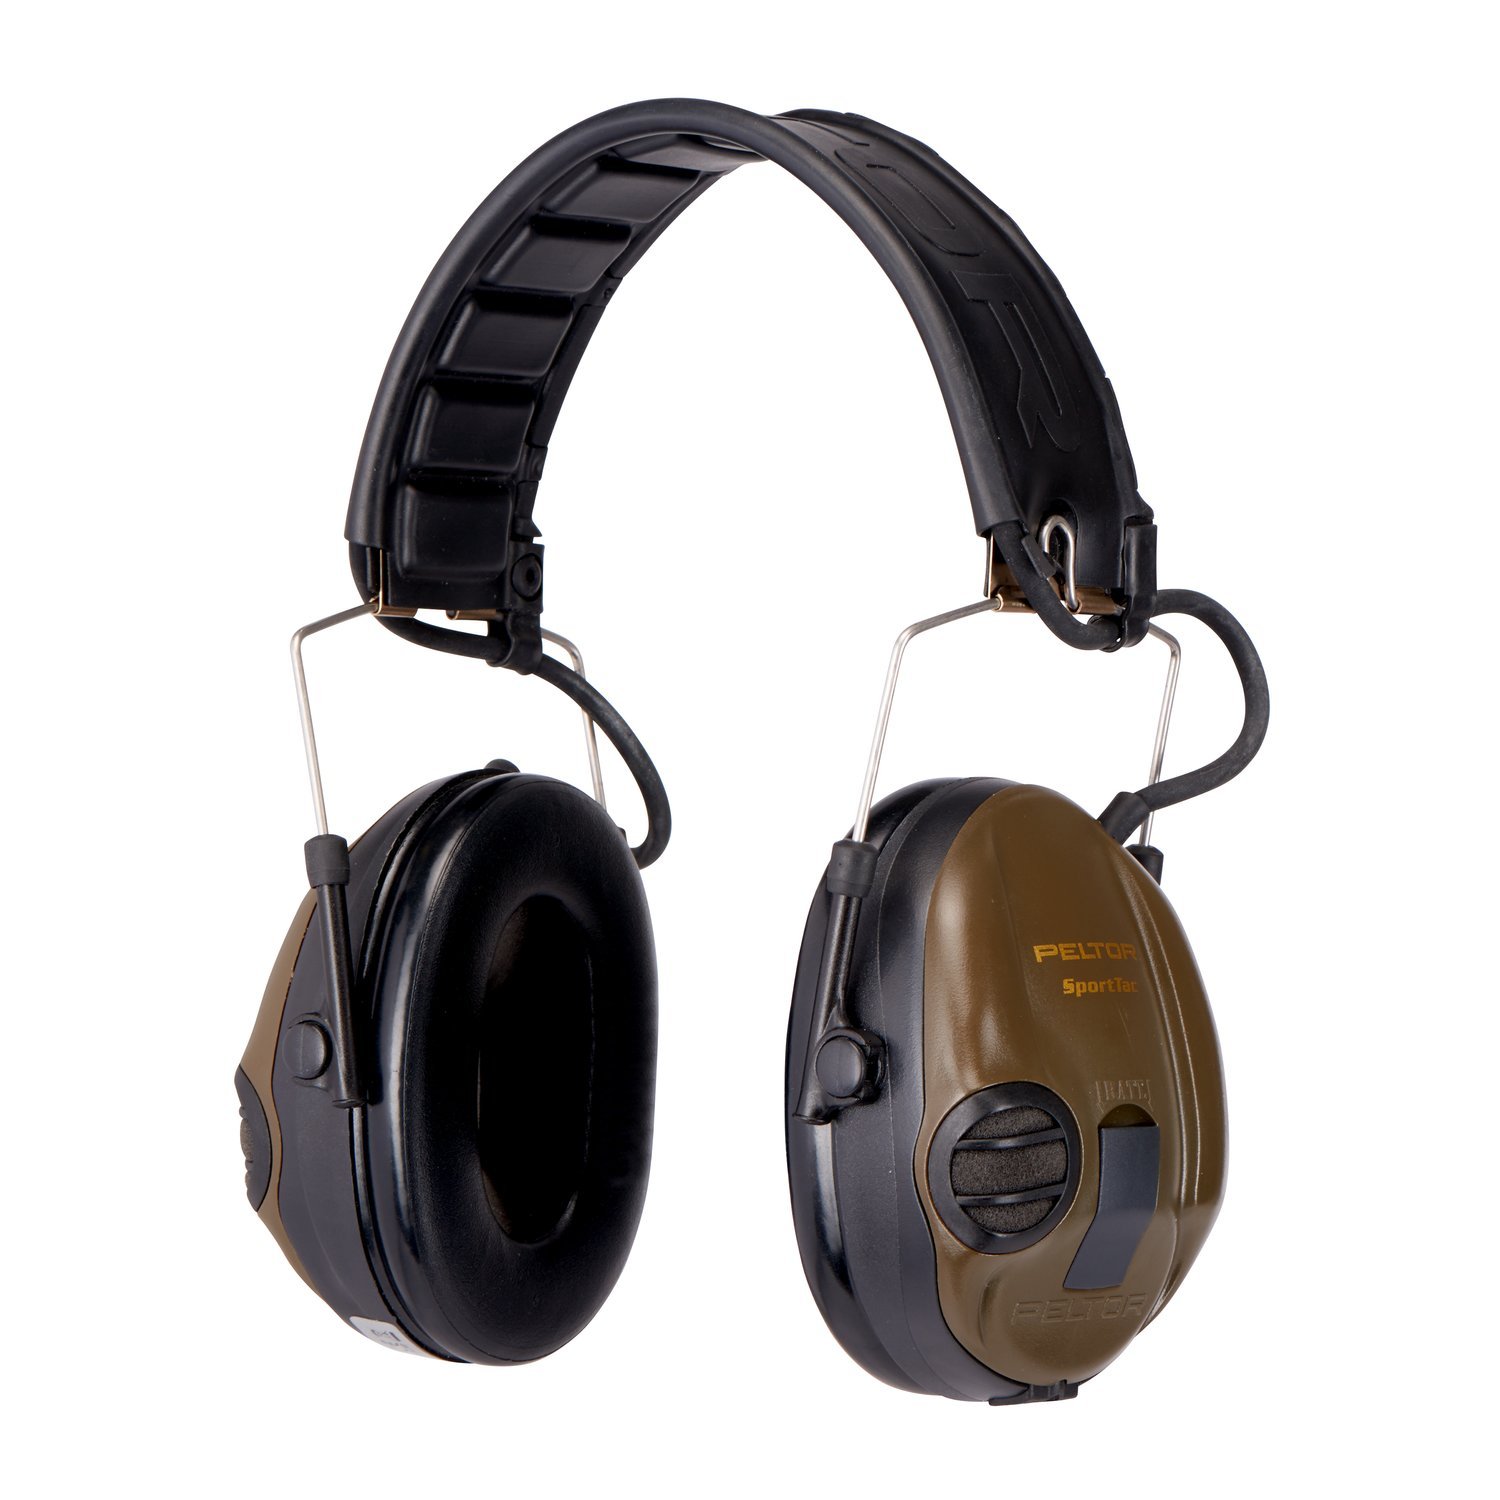 3M Peltor SportTac Gehörschutz grün - Intelligente Ohrschützer mit aktiver Schalldämmung speziell für Jäger und Sportschützen - Dynamische Geräusch-Regelung - SNR 26dB, inkl Wechselschalen Orange